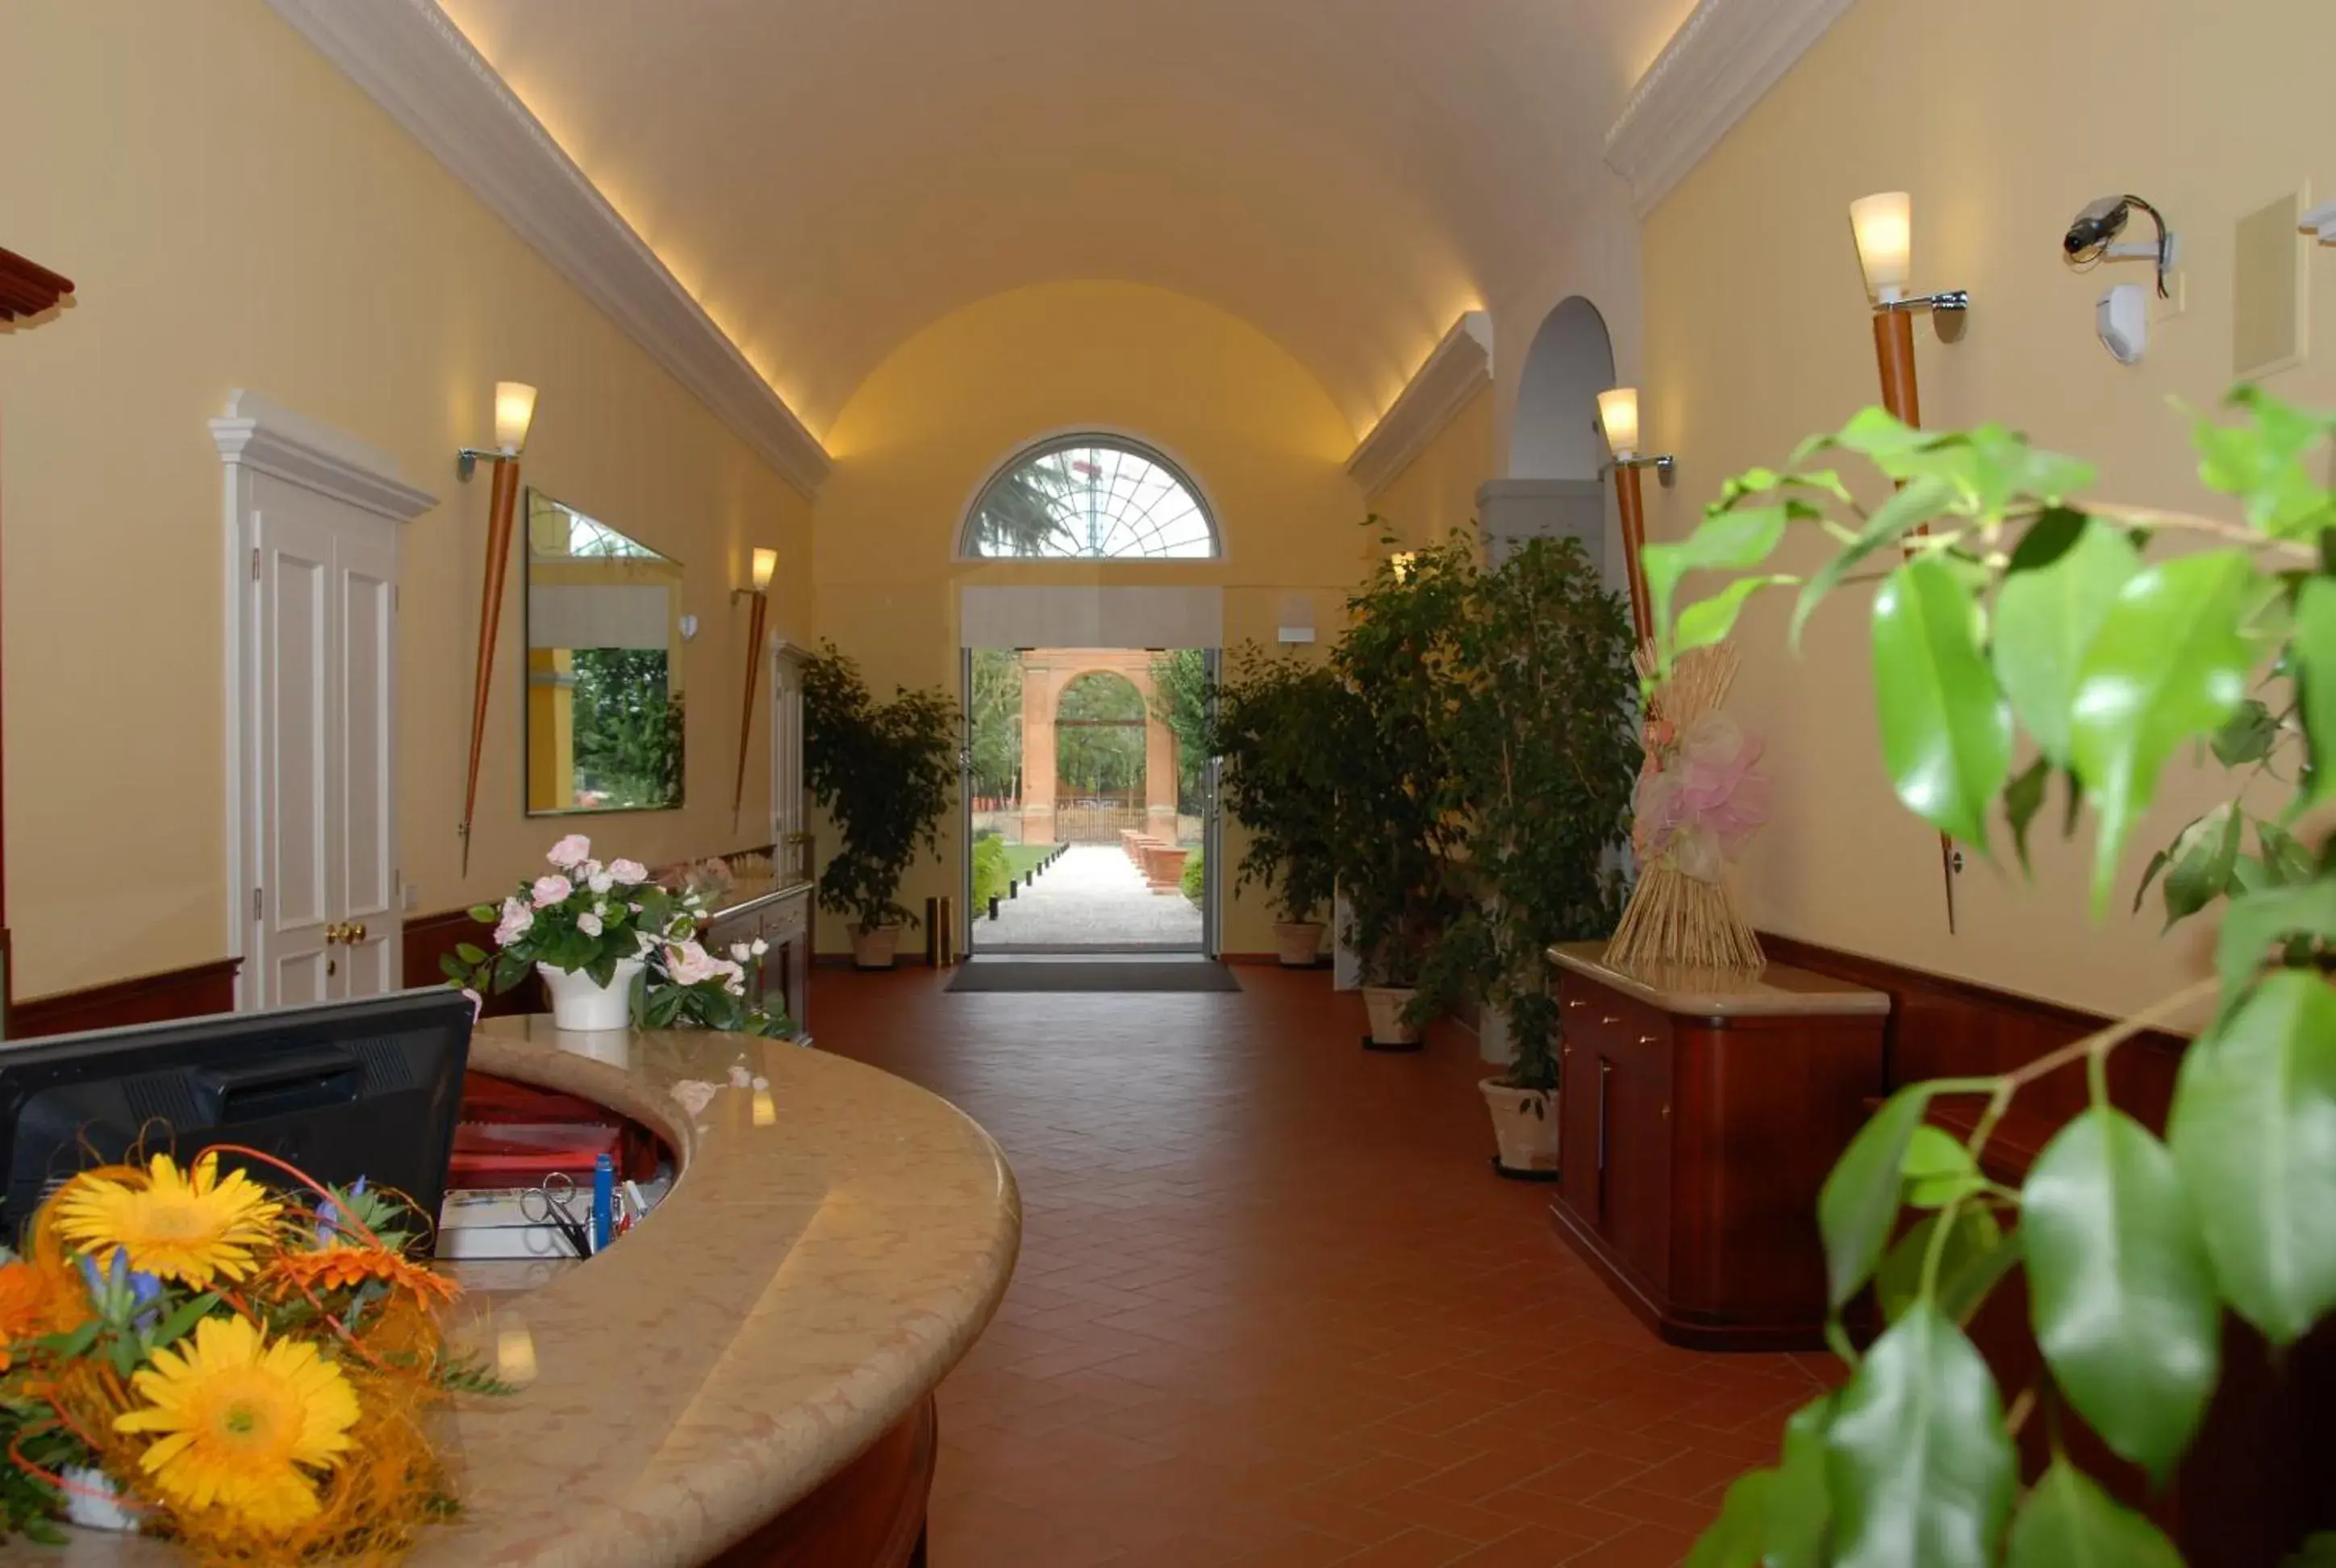 Lobby or reception in Villa Aretusi